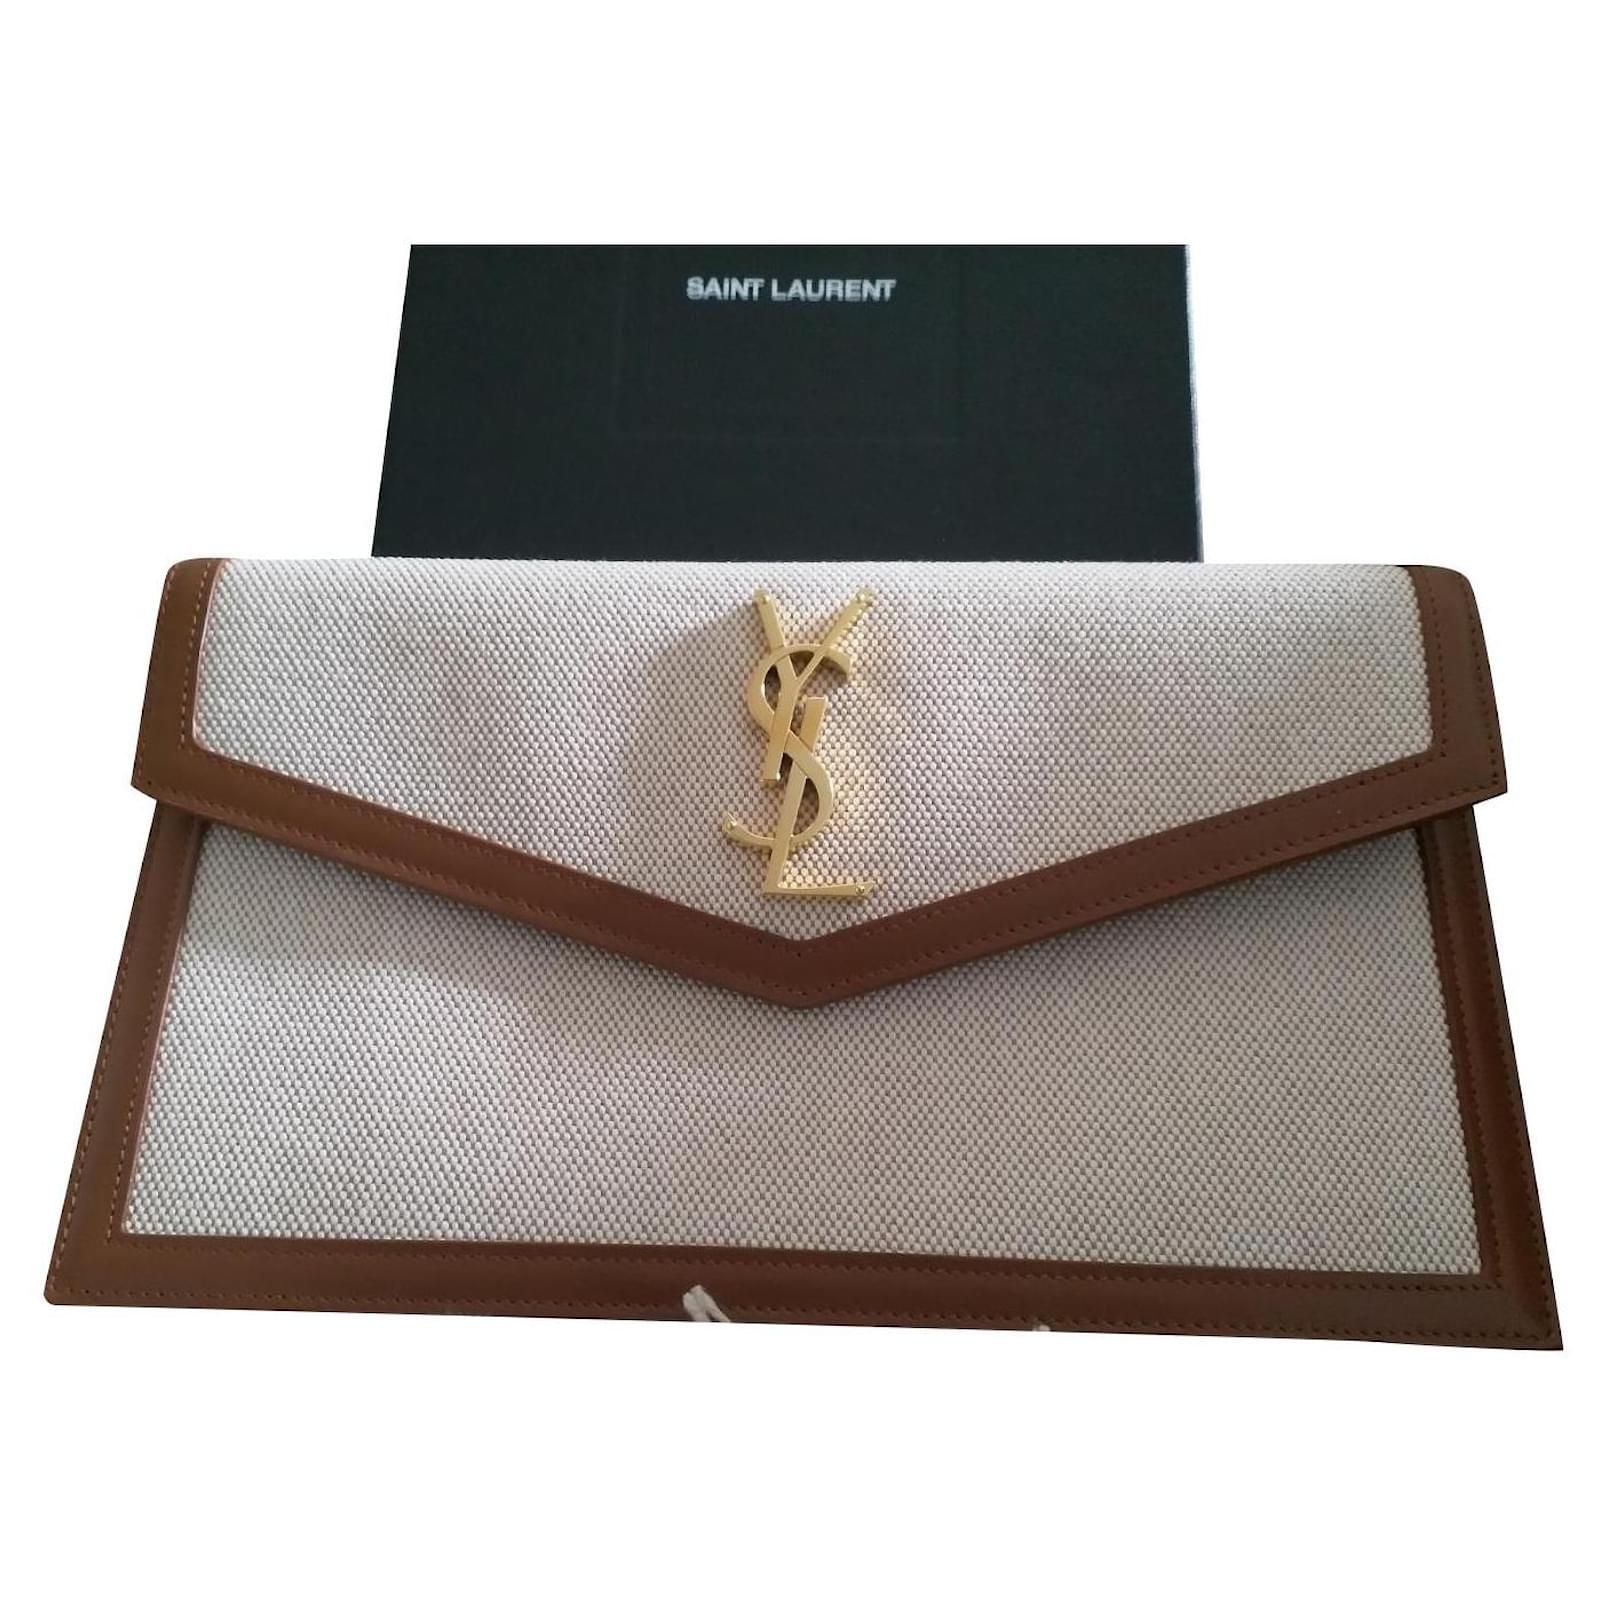 SAINT LAURENT - Uptown envelope leather pouch